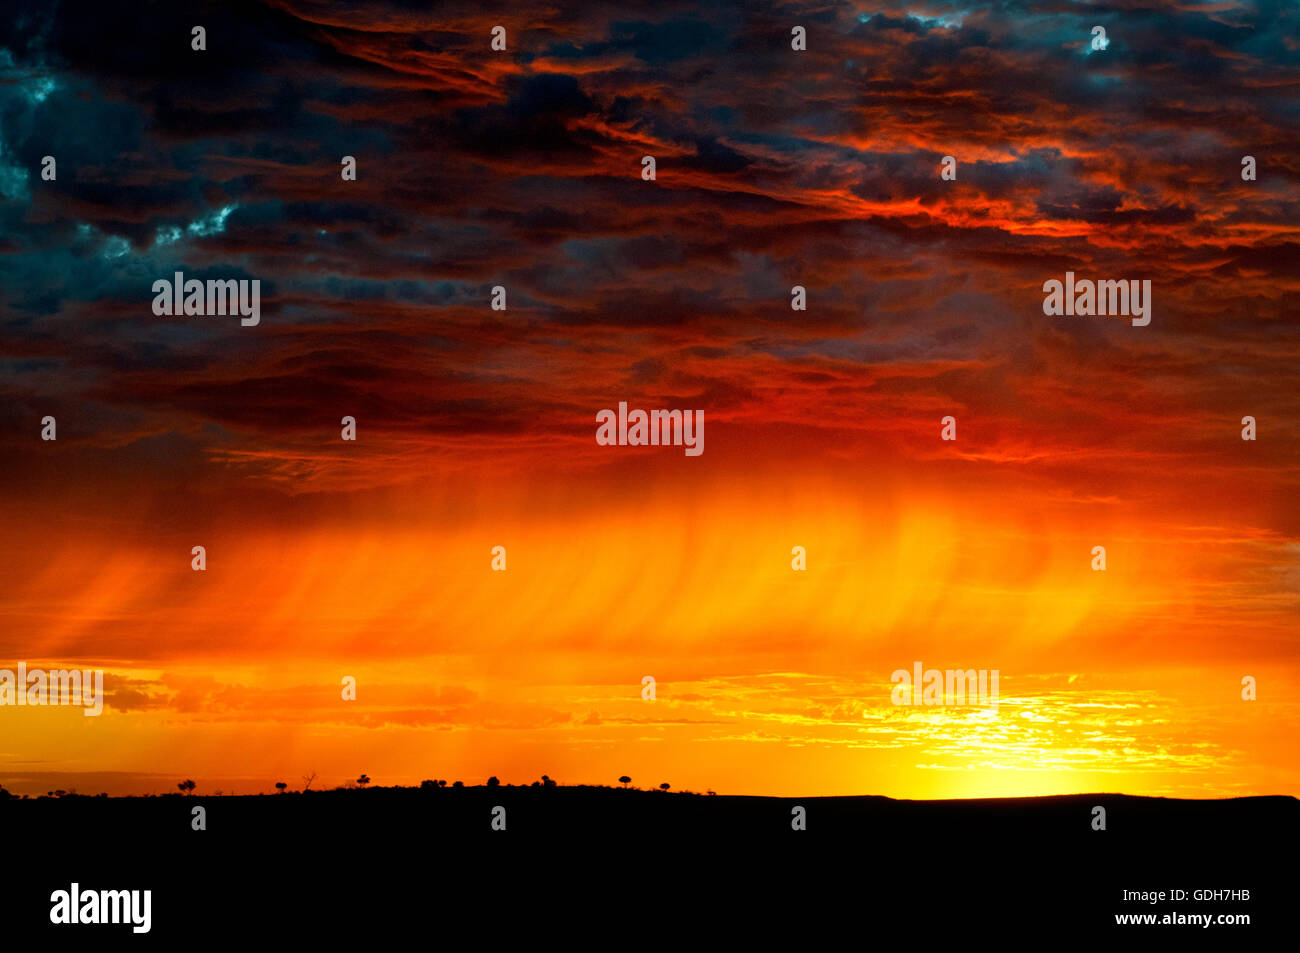 Spectacular sunrise in the australian desert. Stock Photo